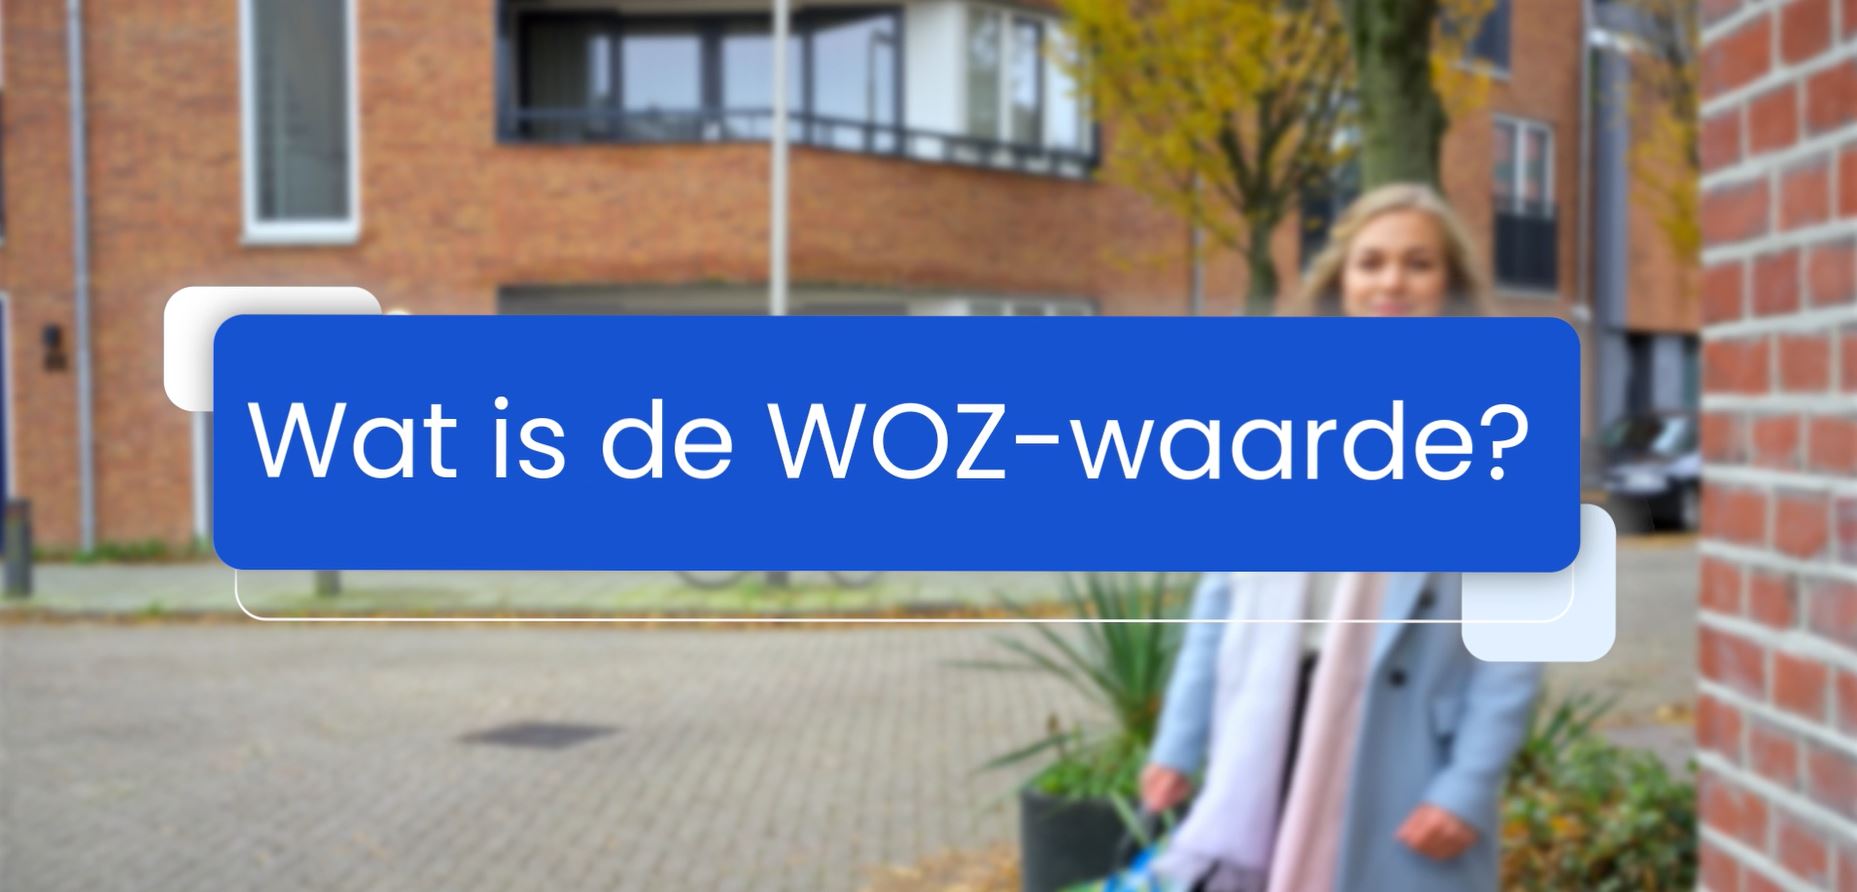 Foto van een vrouw die door de wijk loopt waarbij de tekst staat 'Wat is de WOZ-waarde?'